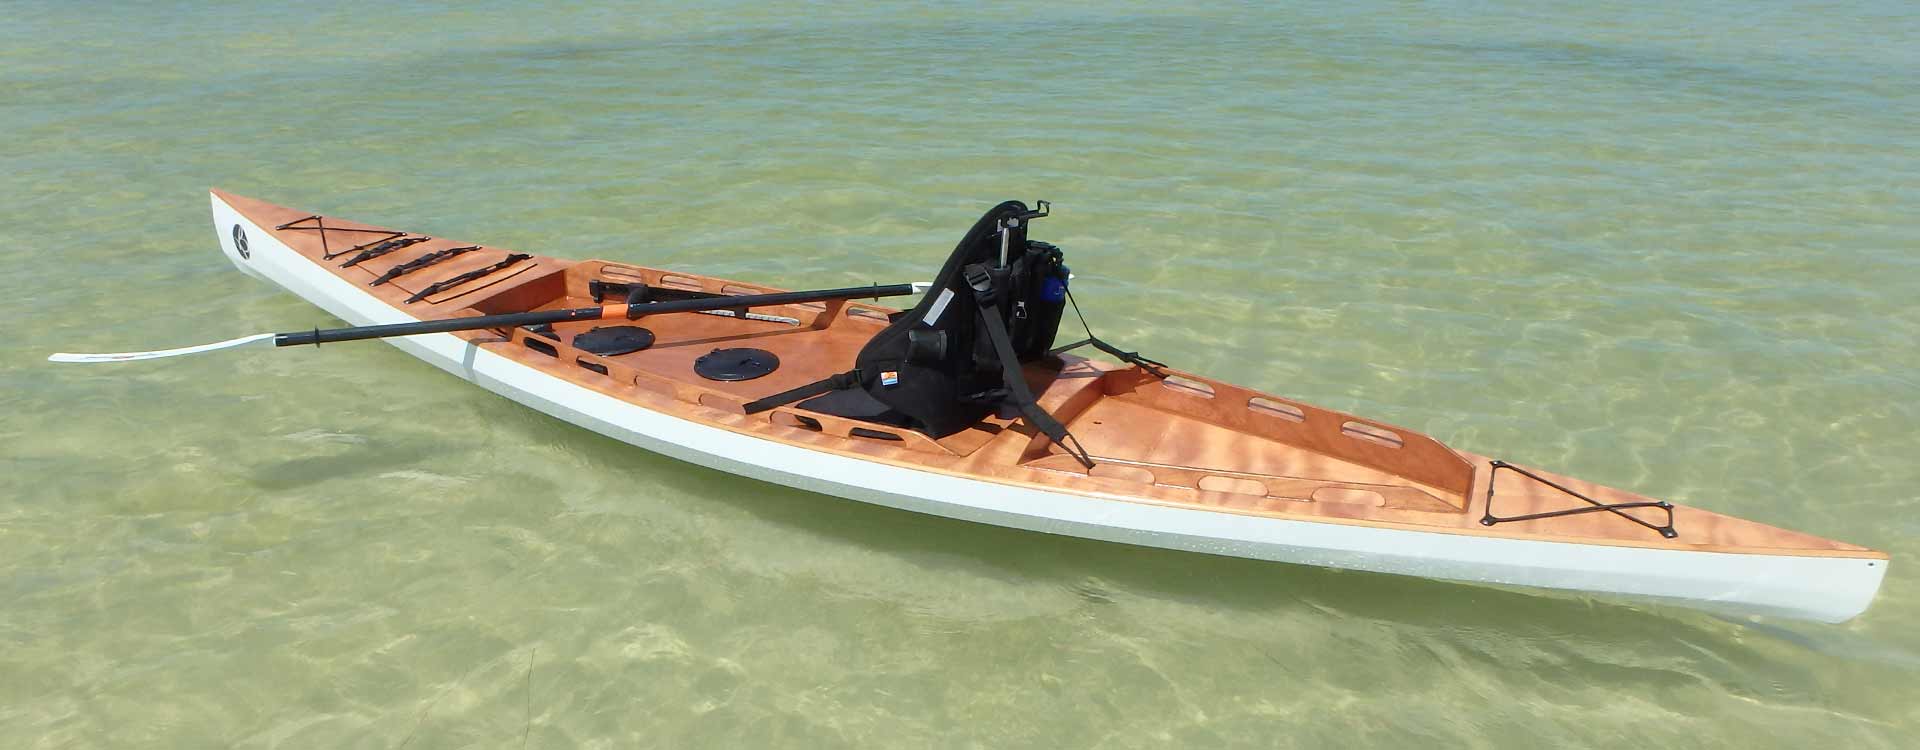 F1430 Sit On Top kayak Bedard Yacht Design